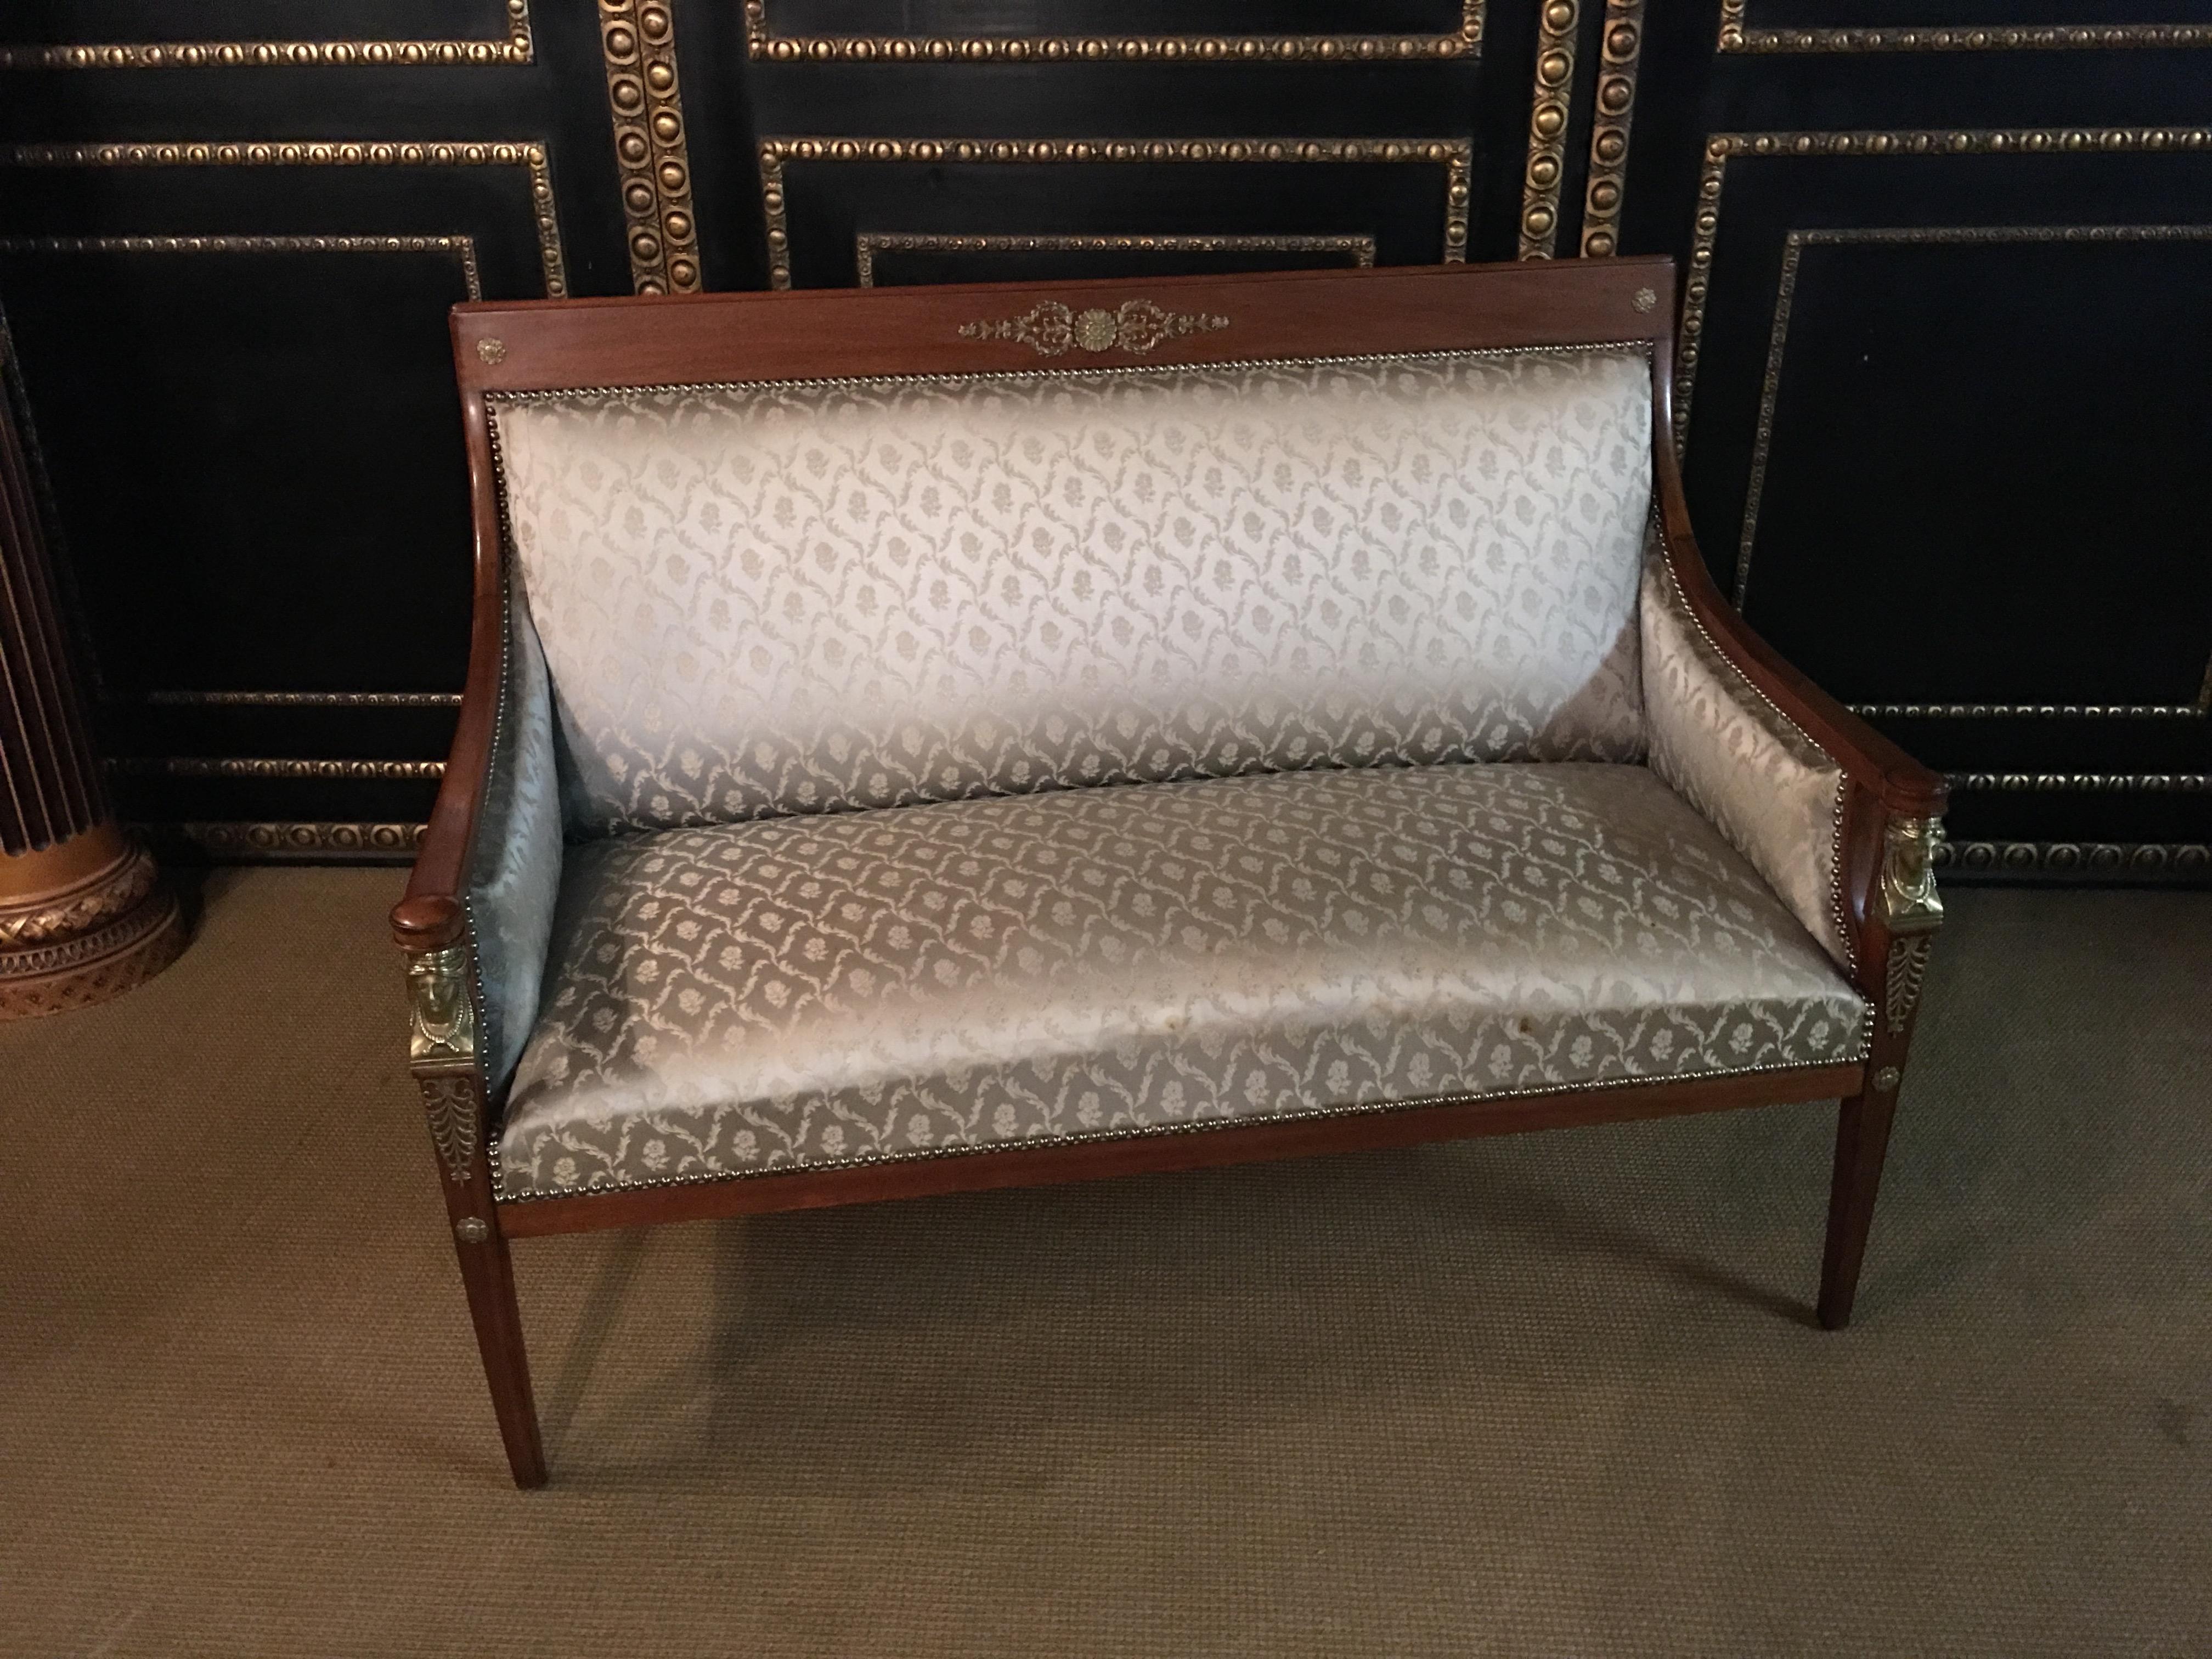 Original Empire sofa circa 1860-1870 from an Empire room.
Massive mahogany cast with Empire caryadites bronze.
top condition.

Measurments:
Breite: 140cm
Höhe: 100cm
Tiefe: 80.